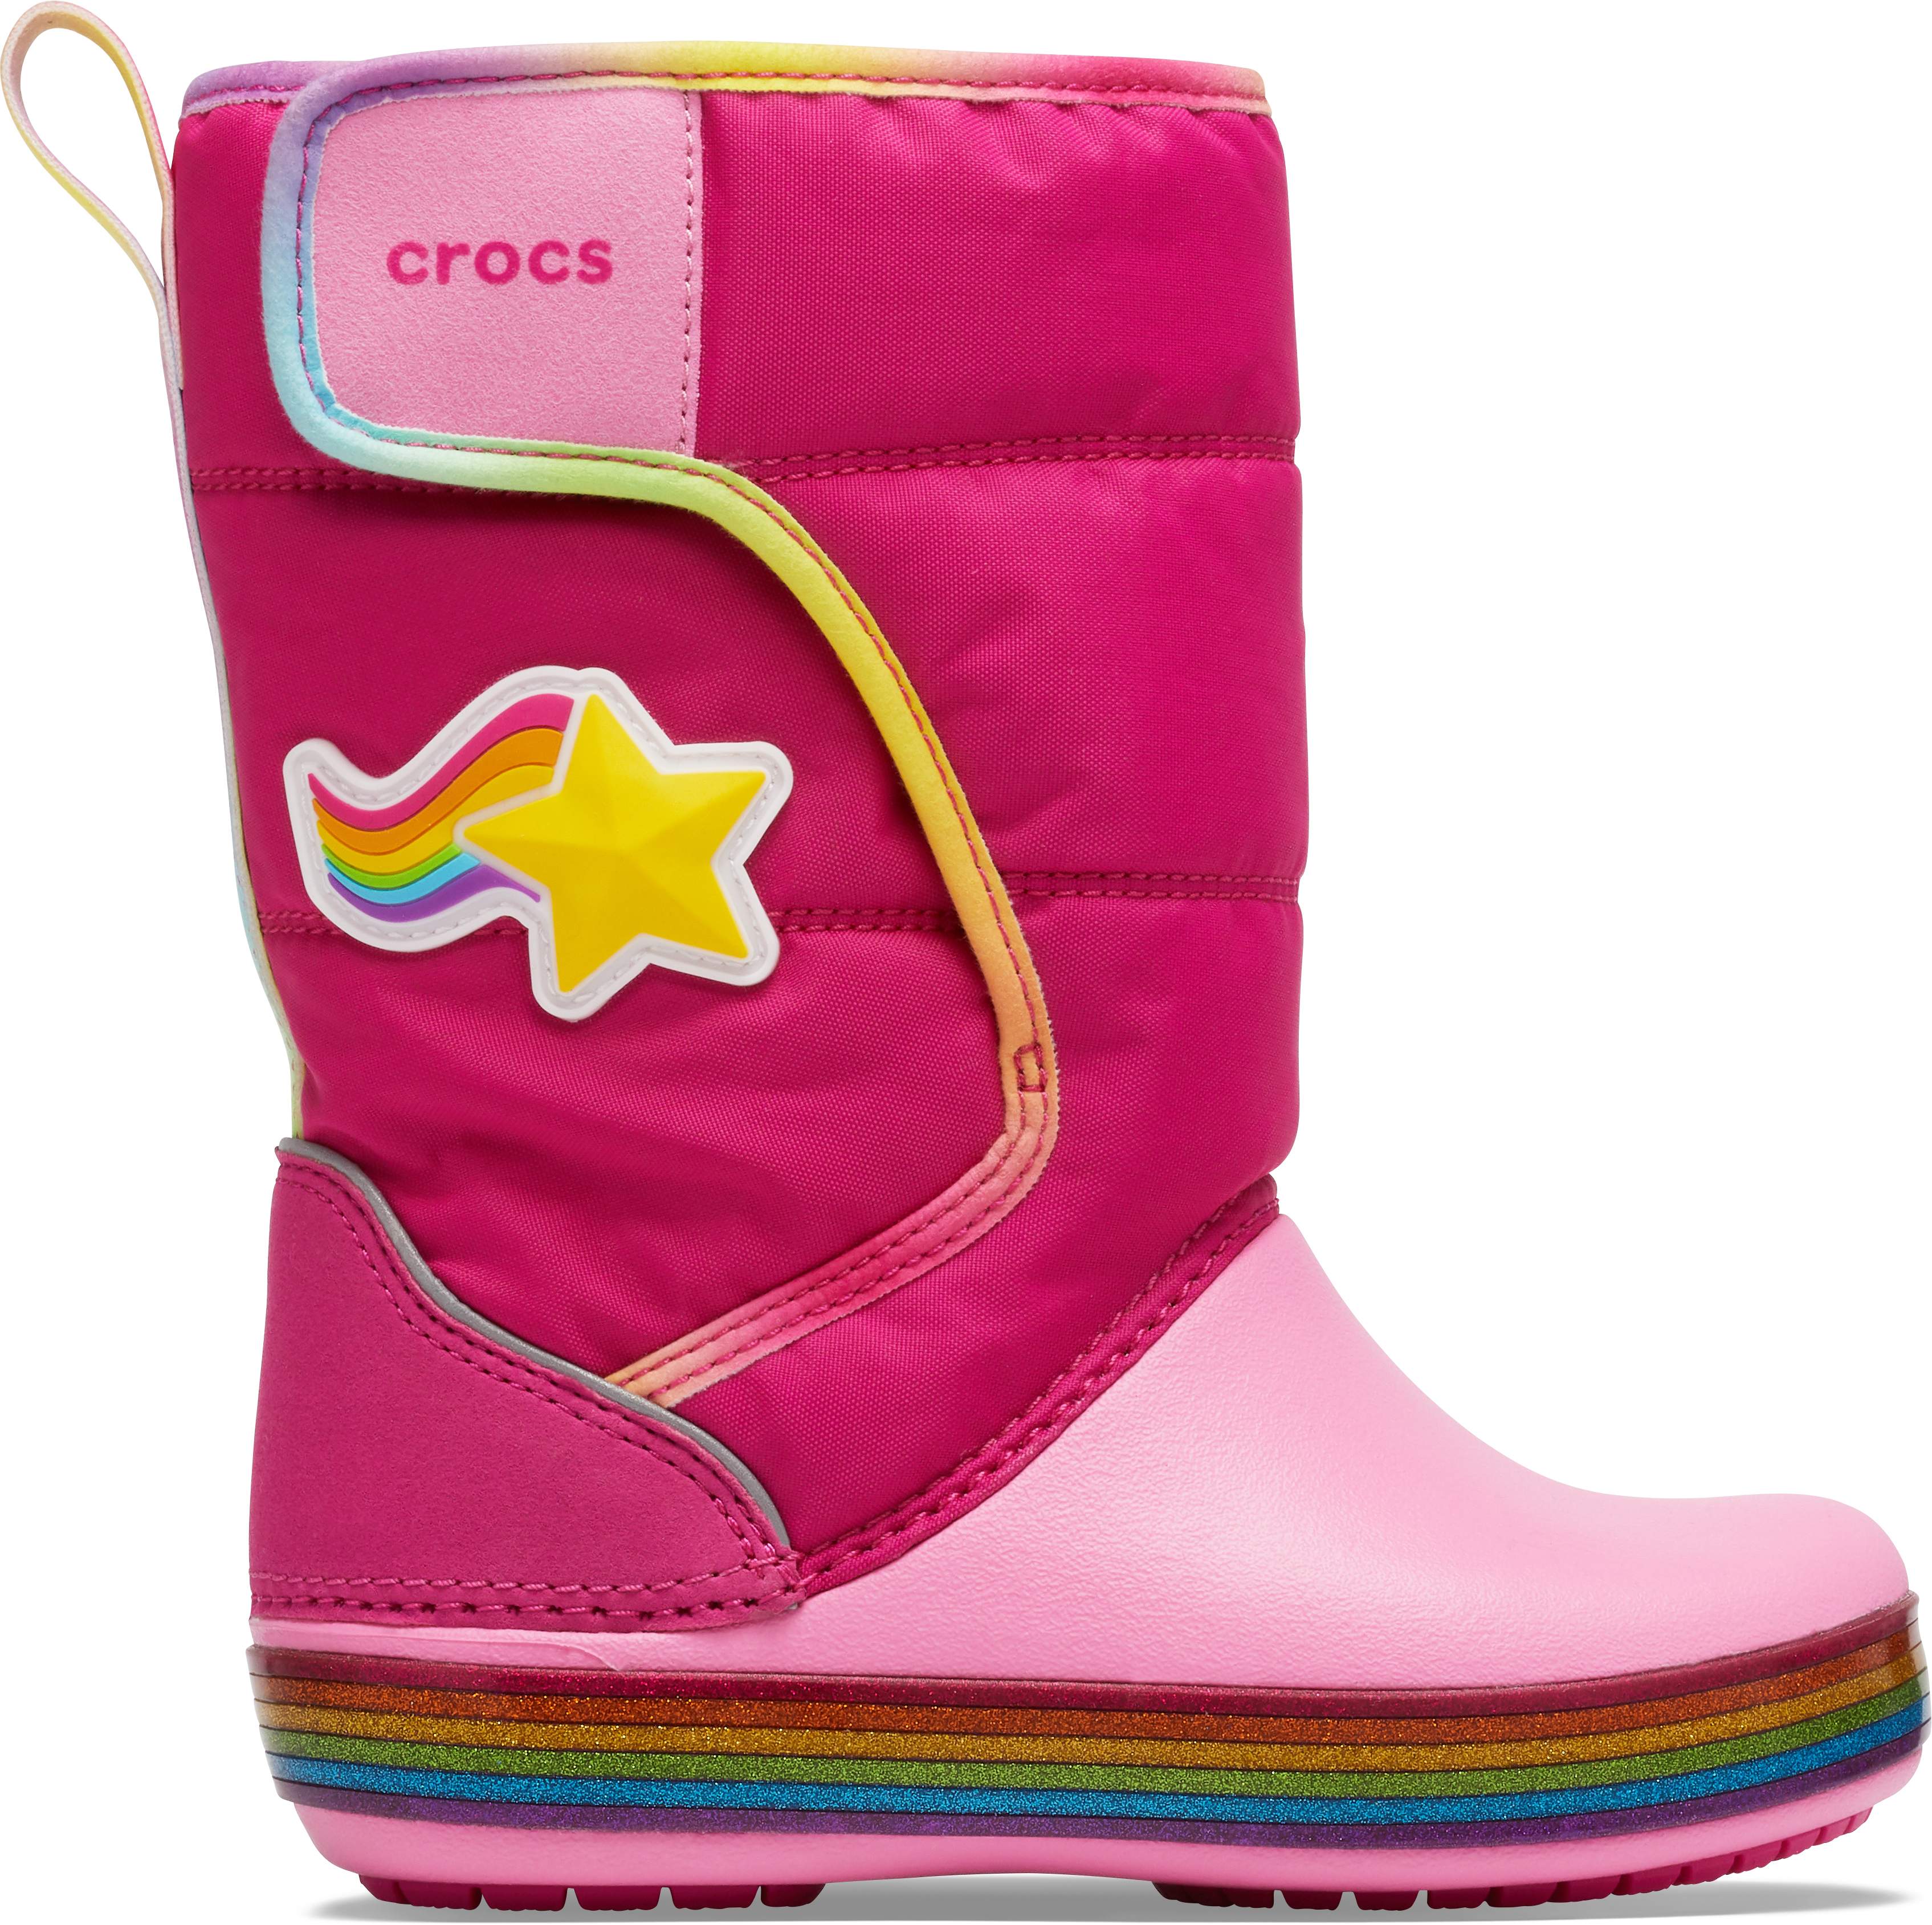 crocs girls boots